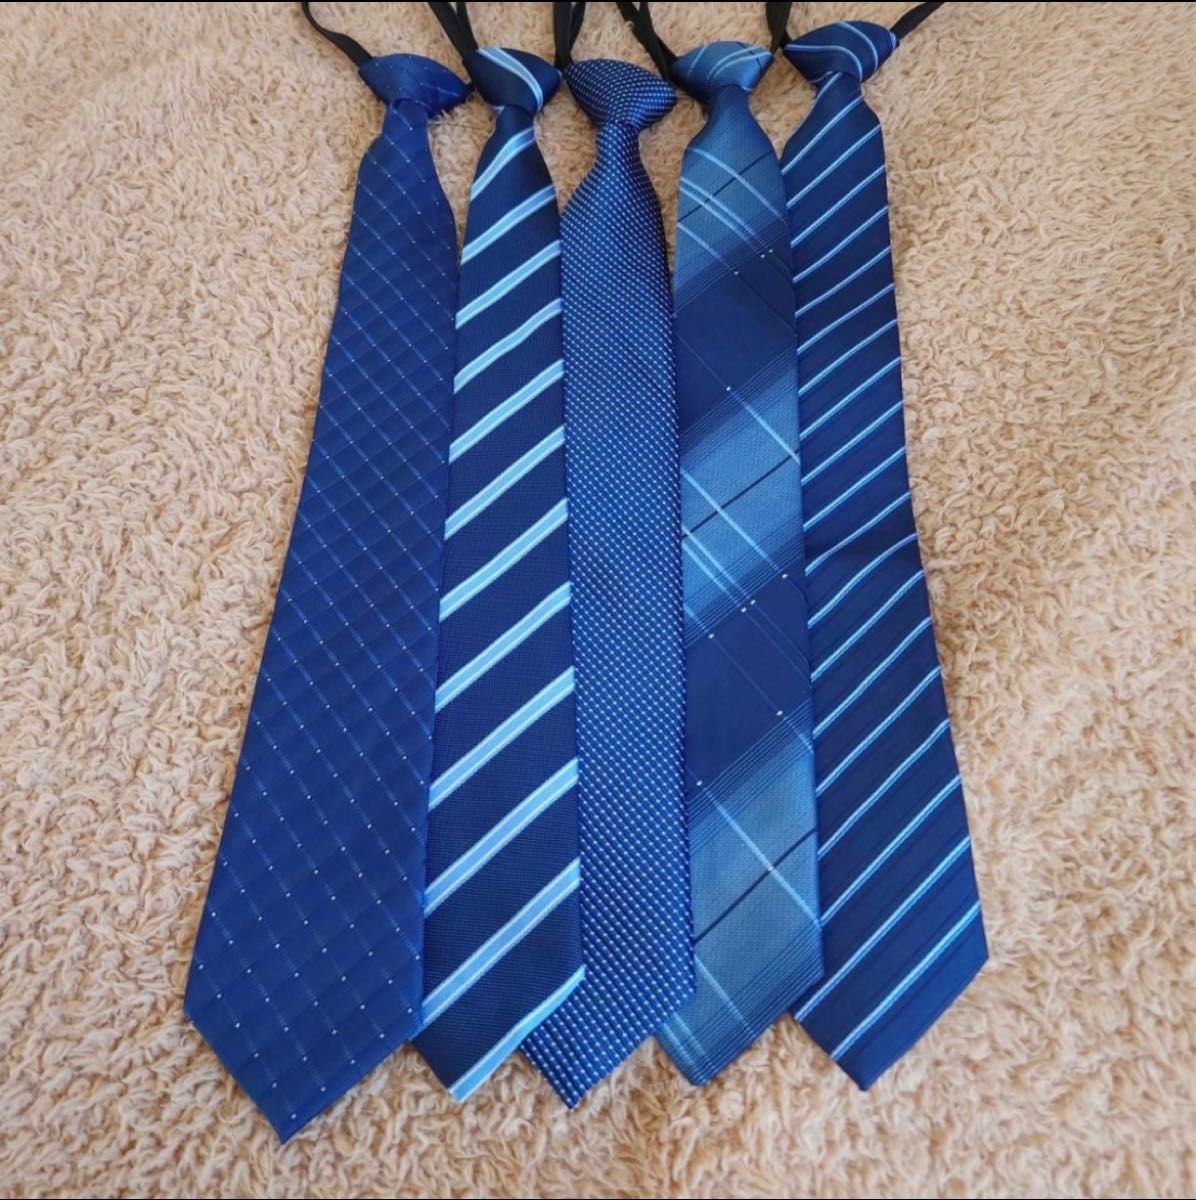 ワンタッチネクタイ　簡単ネクタイ　装着簡単　厳選　定番　5点セット　ストライプ　ネイビー　ブルー系